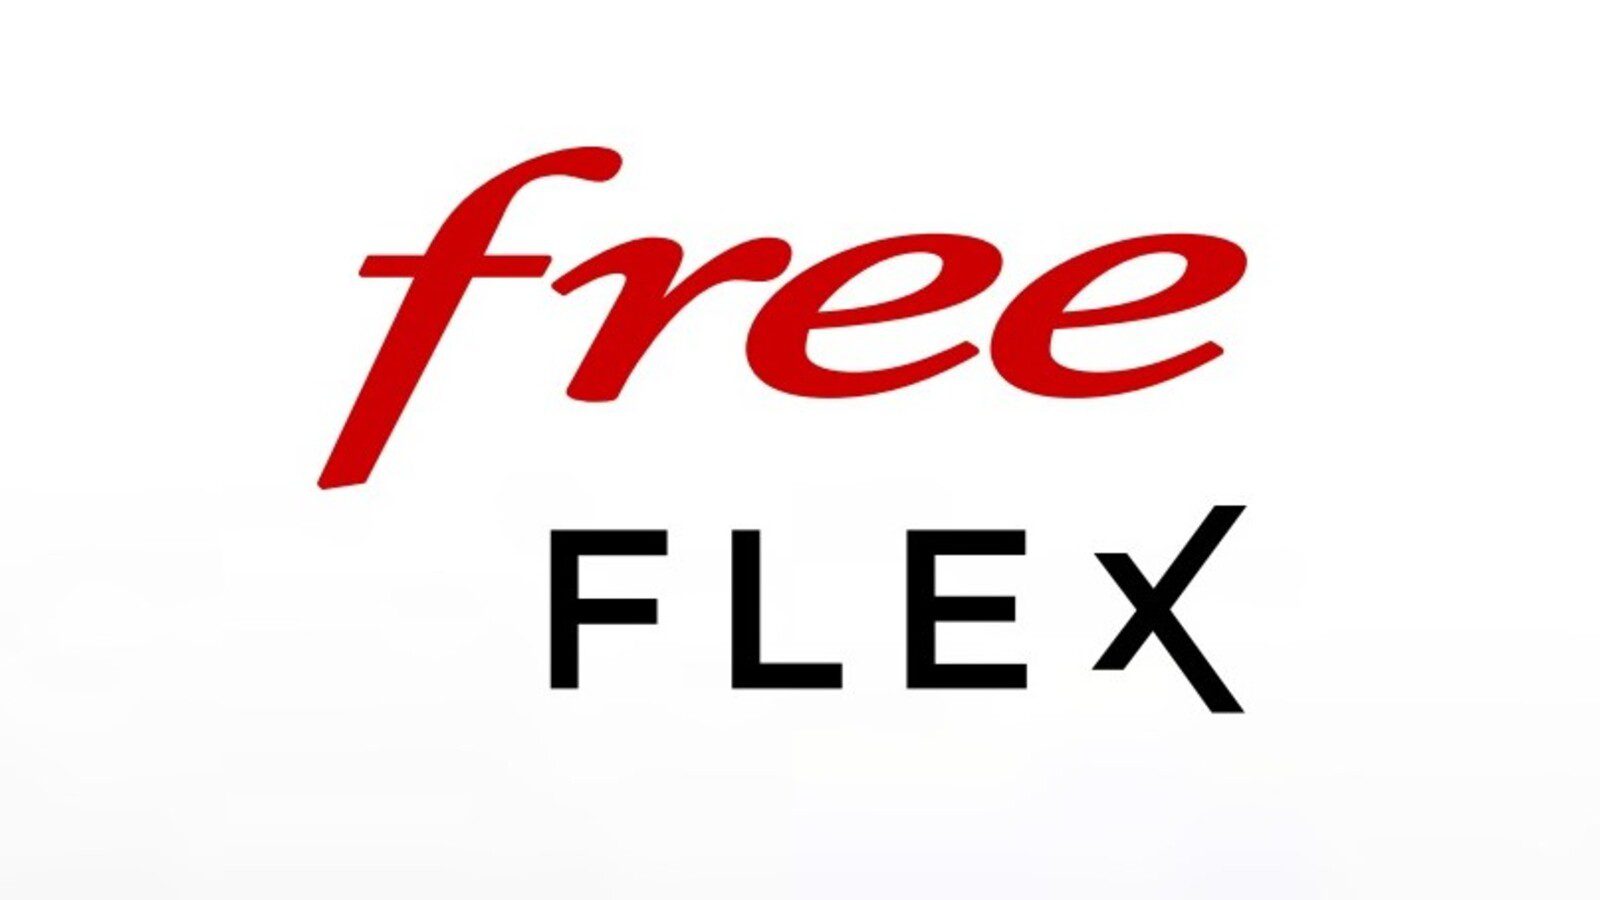 Lansering av gratis “Flexibilitet”, erbjudande om hyra av mobila enheter med köpoption och inget åtagande